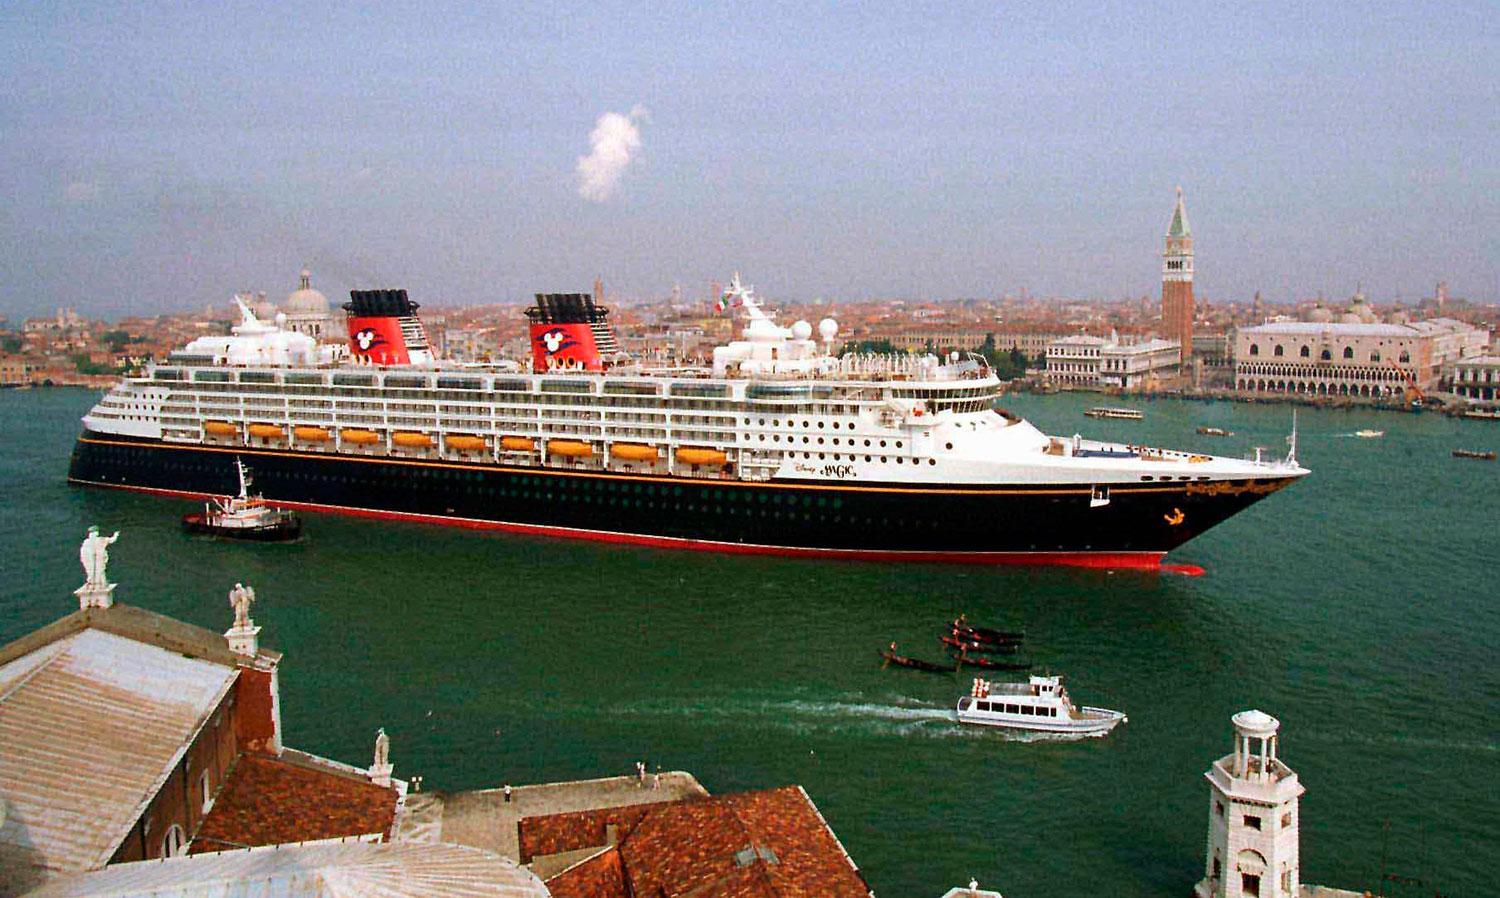 Kryssningsfartygen förstör byggnader i Venedig, anser kritikerna.